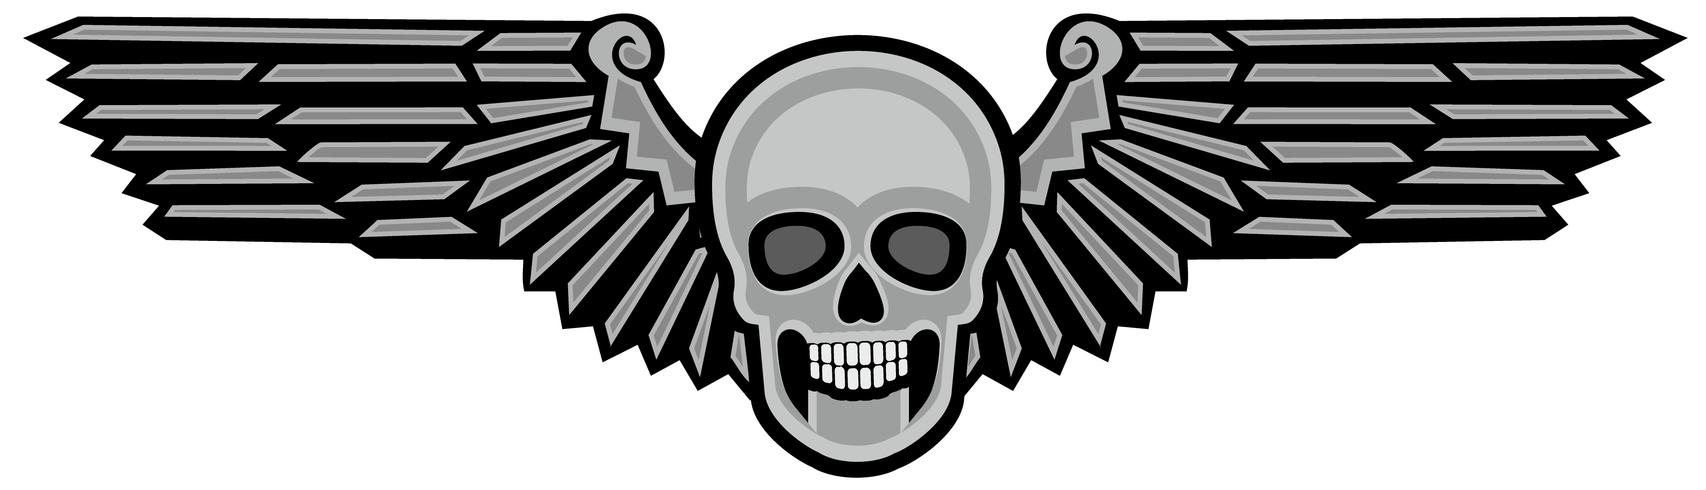 Armee Schädel Wappen vektor